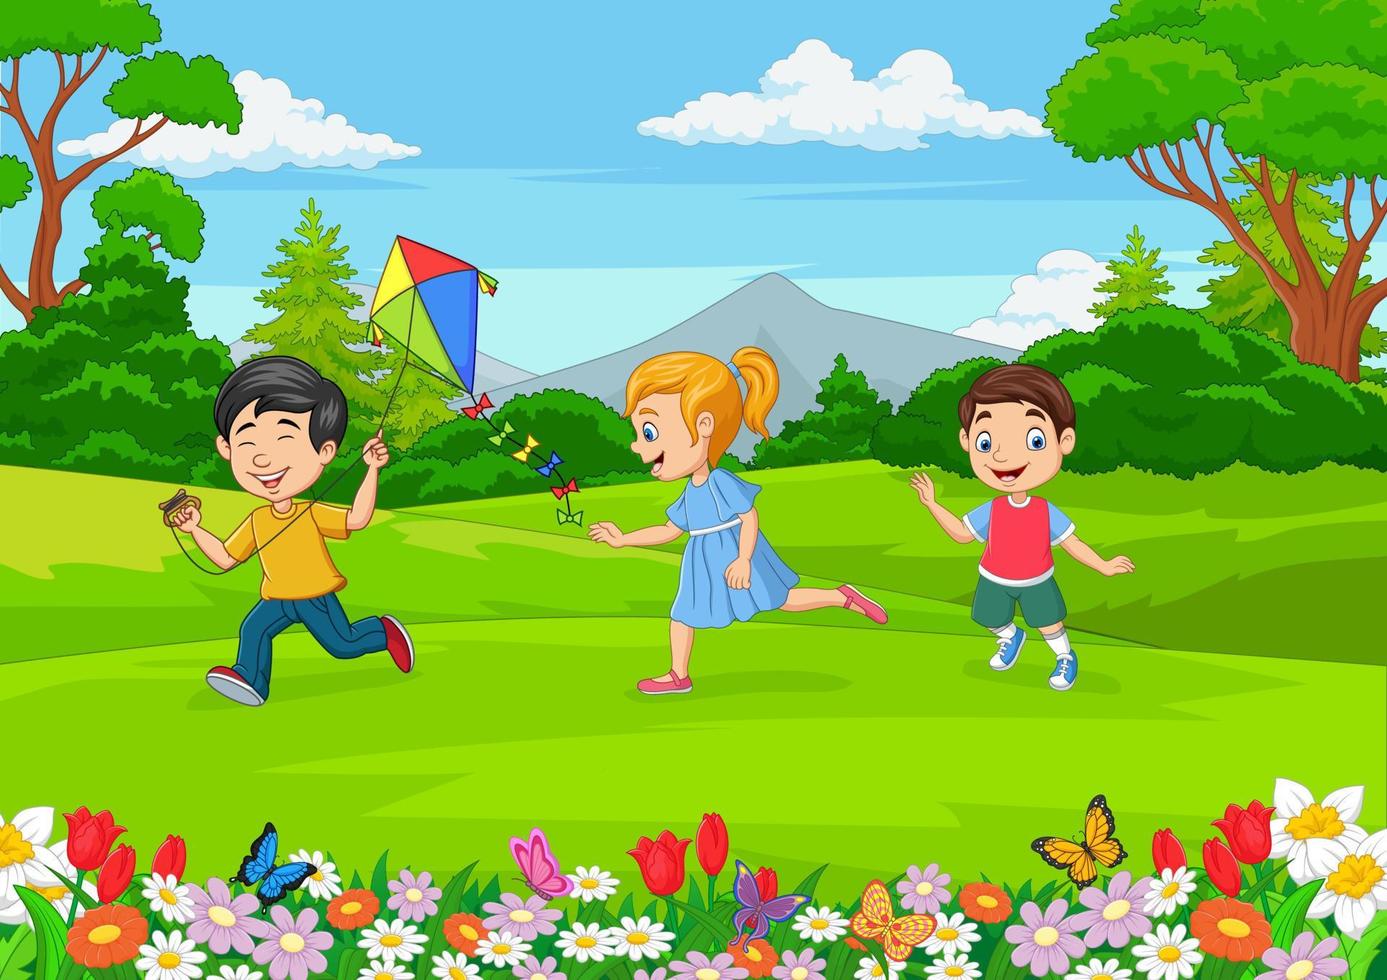 bambini piccoli dei cartoni animati che giocano in giardino vettore